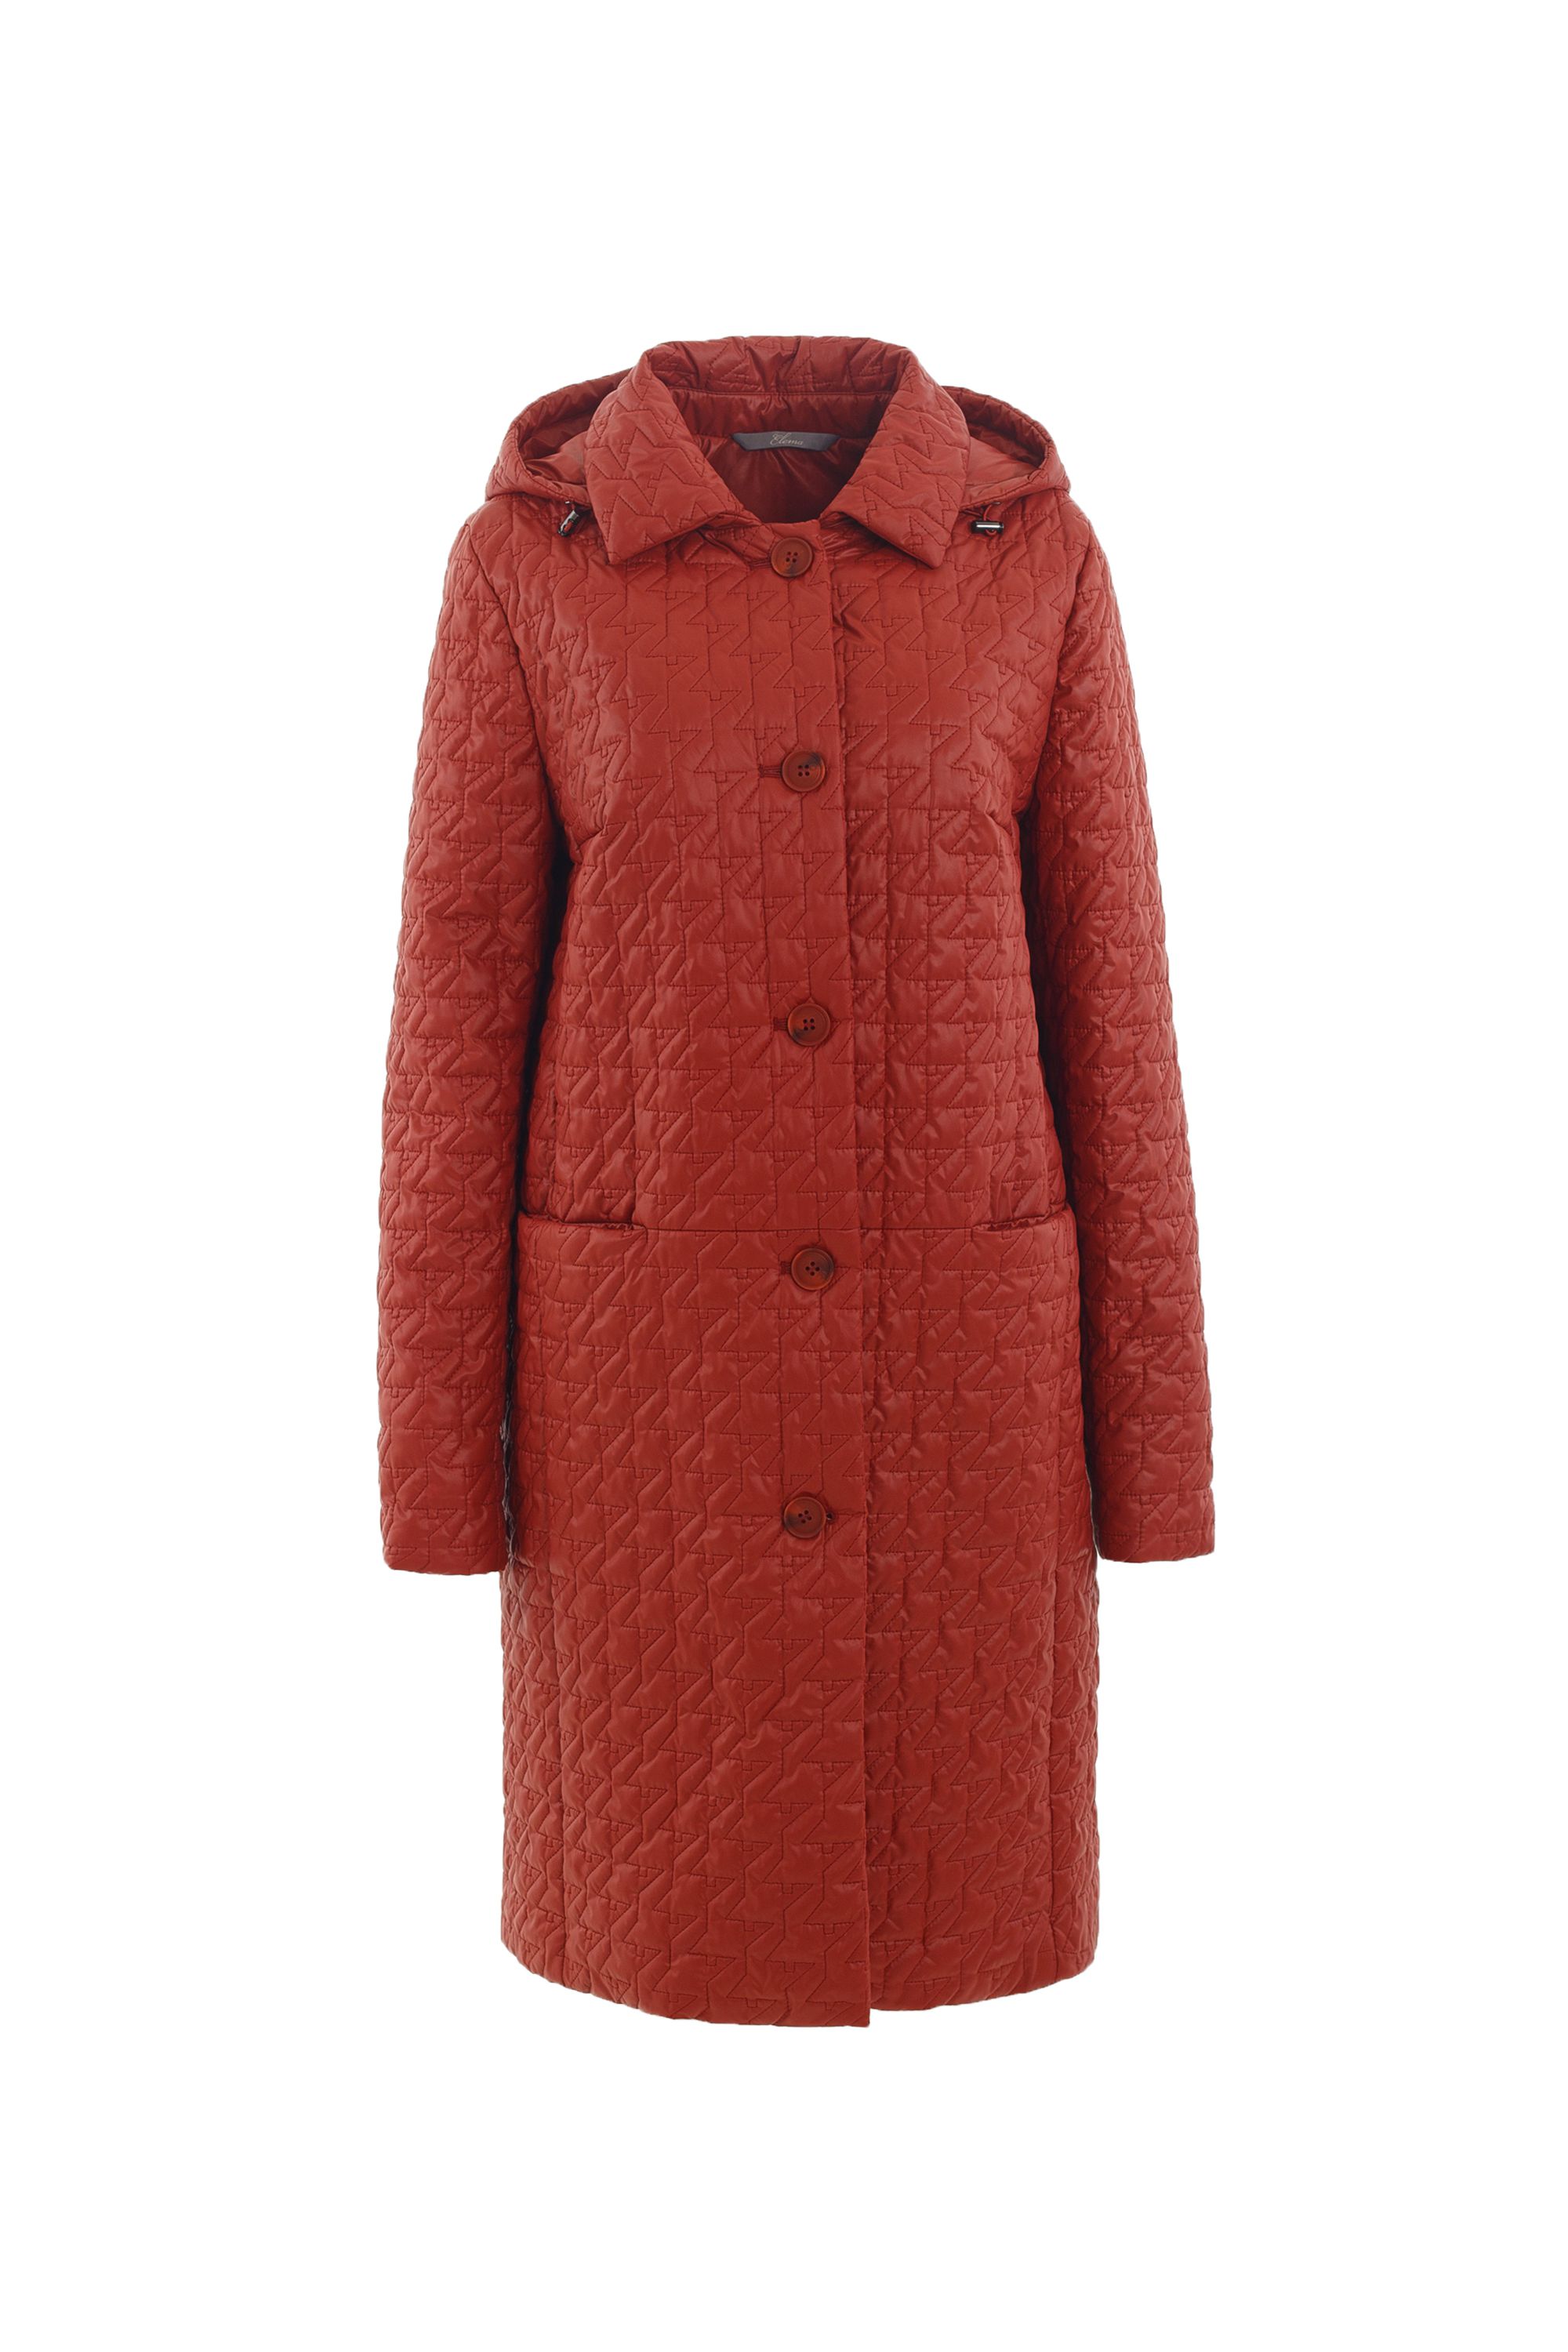 Пальто женское плащевое утепленное 5-12395-1. Фото 1.